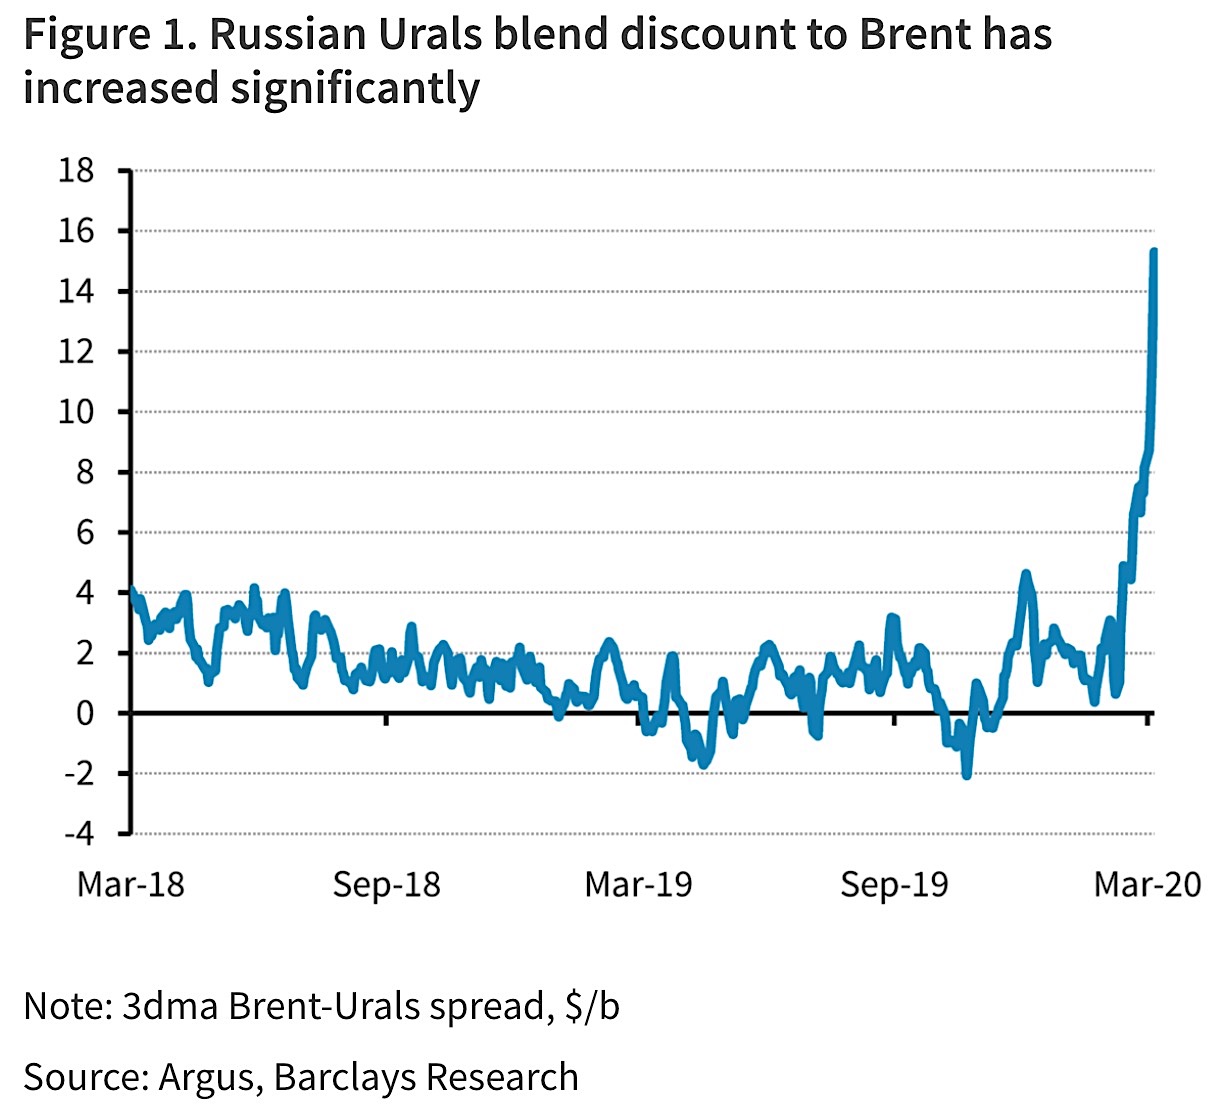 Rabatt på Urals-olja jämfört med Brent